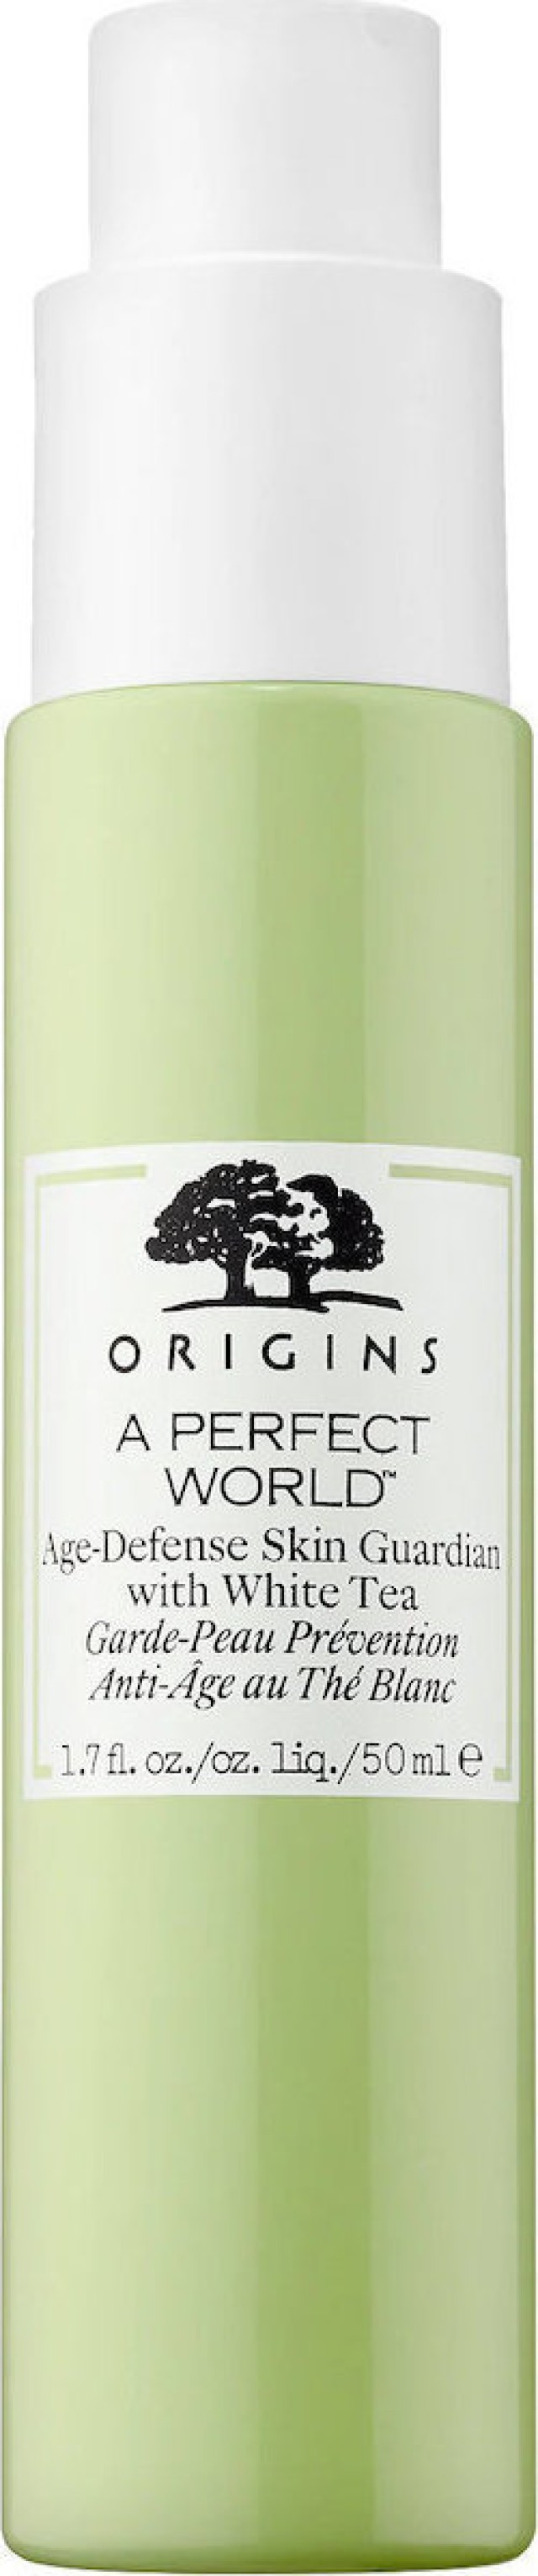 Origins a Perfect World Age Defense Skin Guardian with White Tea Προστατευτική Κρέμα Προσώπου Κατά της Γήρανσης με Λευκό Τσάι για Όλους τους Τύπους Επιδερμίδας 30ml